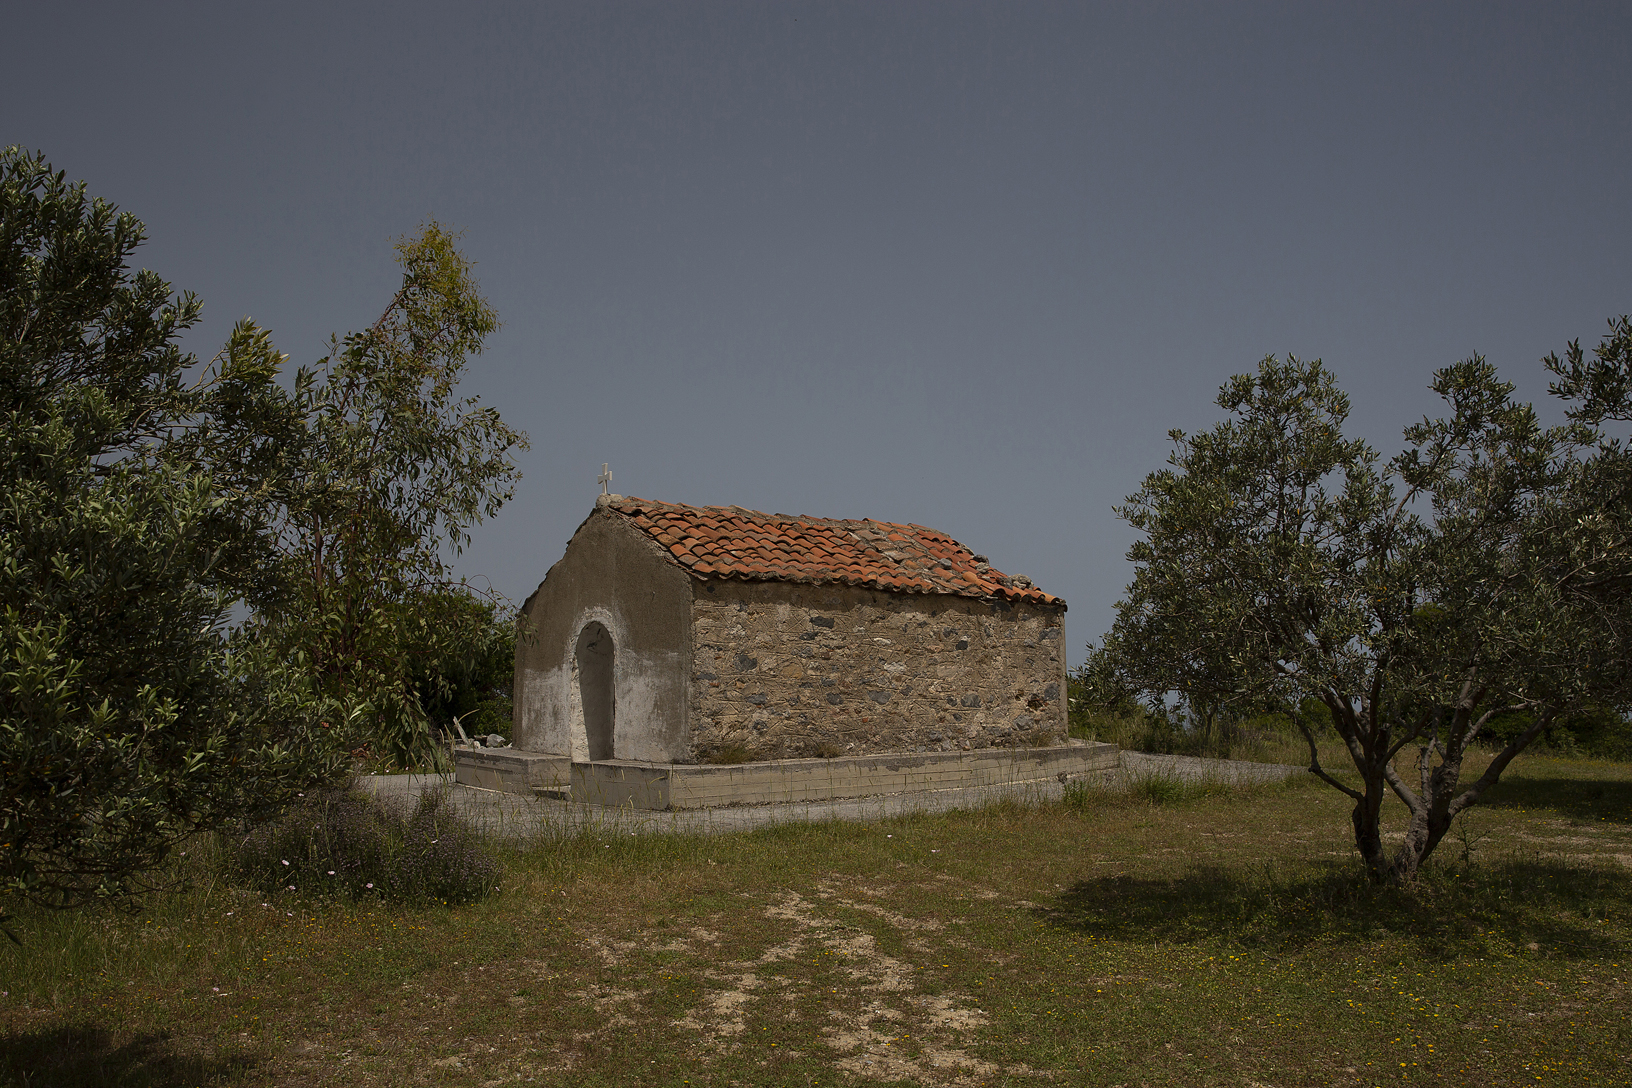 Μονή Παπαβλασσά (Εισόδια της Θεοτόκου), χωριό Οκτωνιά. Φωτογραφία: ©Βασίλης Συκάς, για τον Δήμο Κύμης-Αλιβερίου